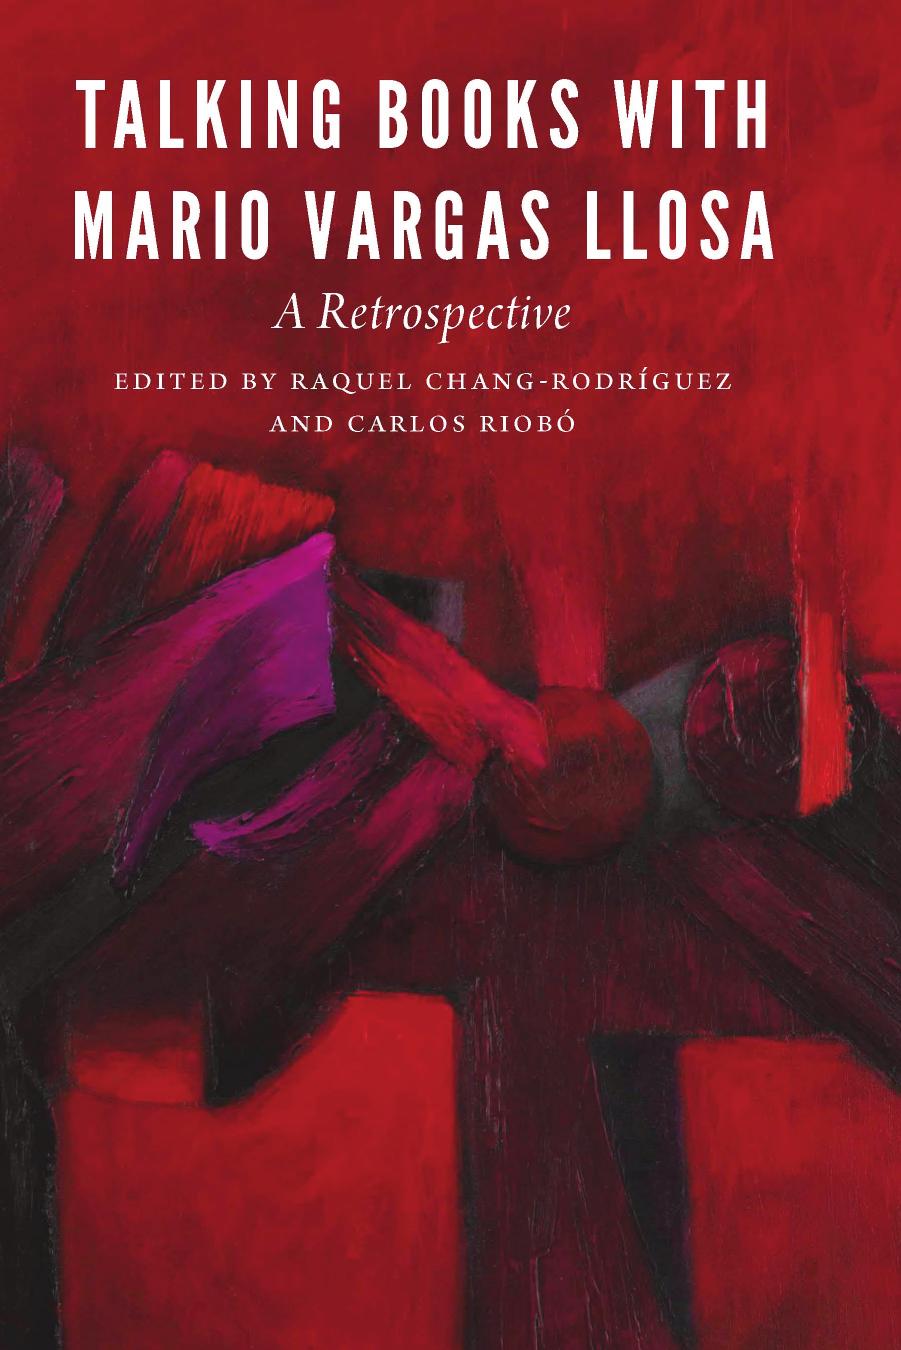 Talking Books with Mario Vargas Llosa: A Retrospective by Raquel Chang-Rodríguez; Carlos Riobó